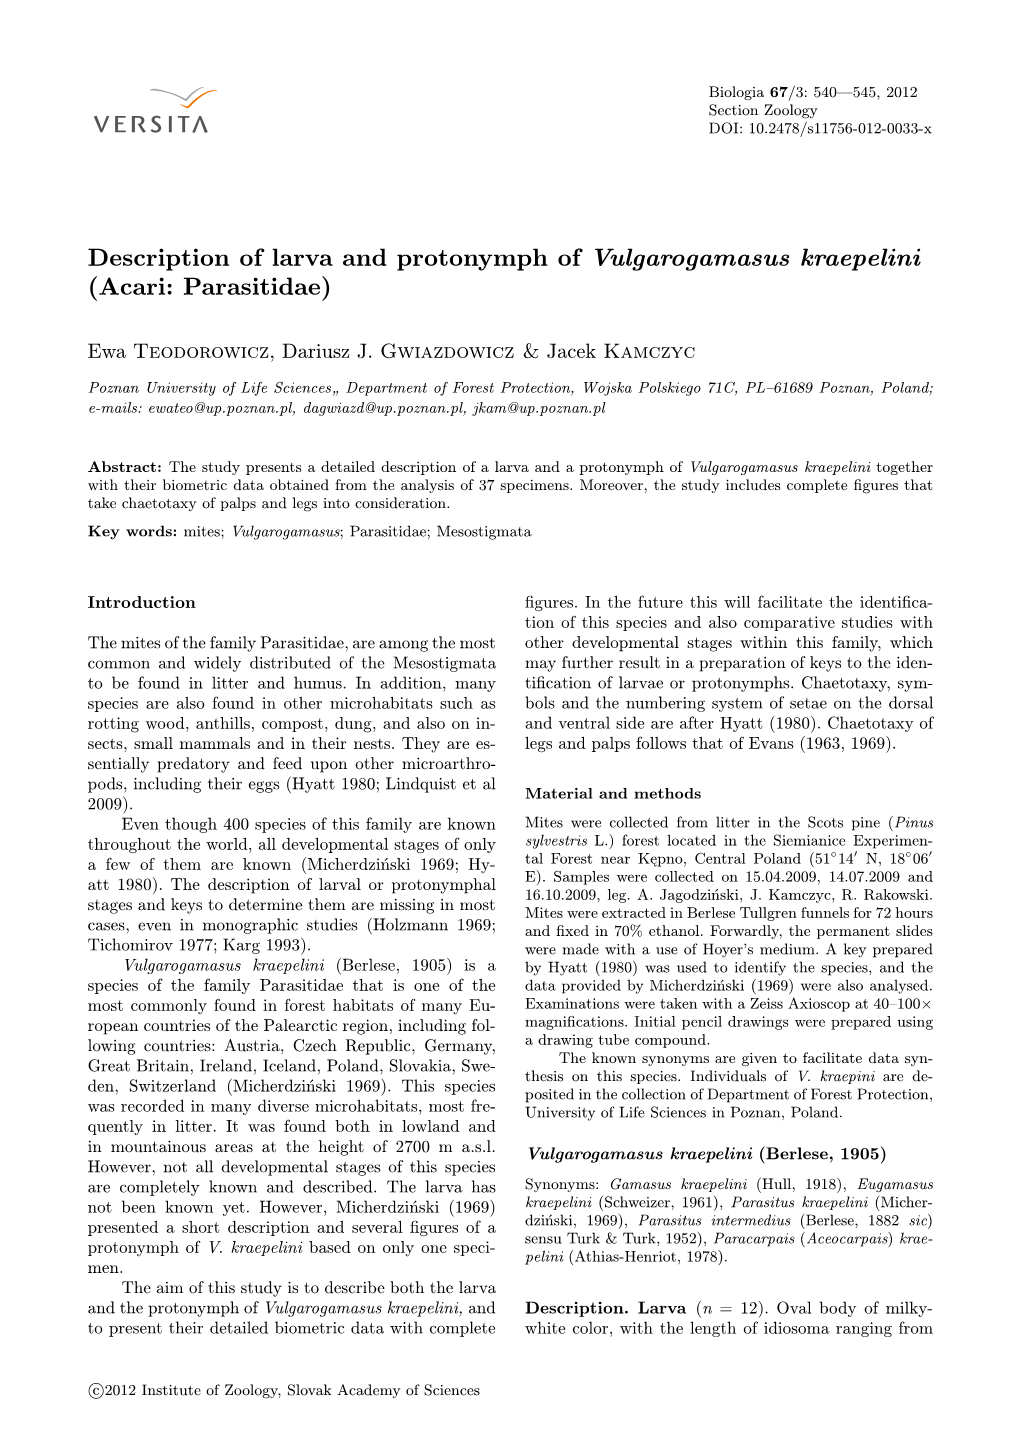 Description of Larva and Protonymph of Vulgarogamasus Kraepelini (Acari: Parasitidae)